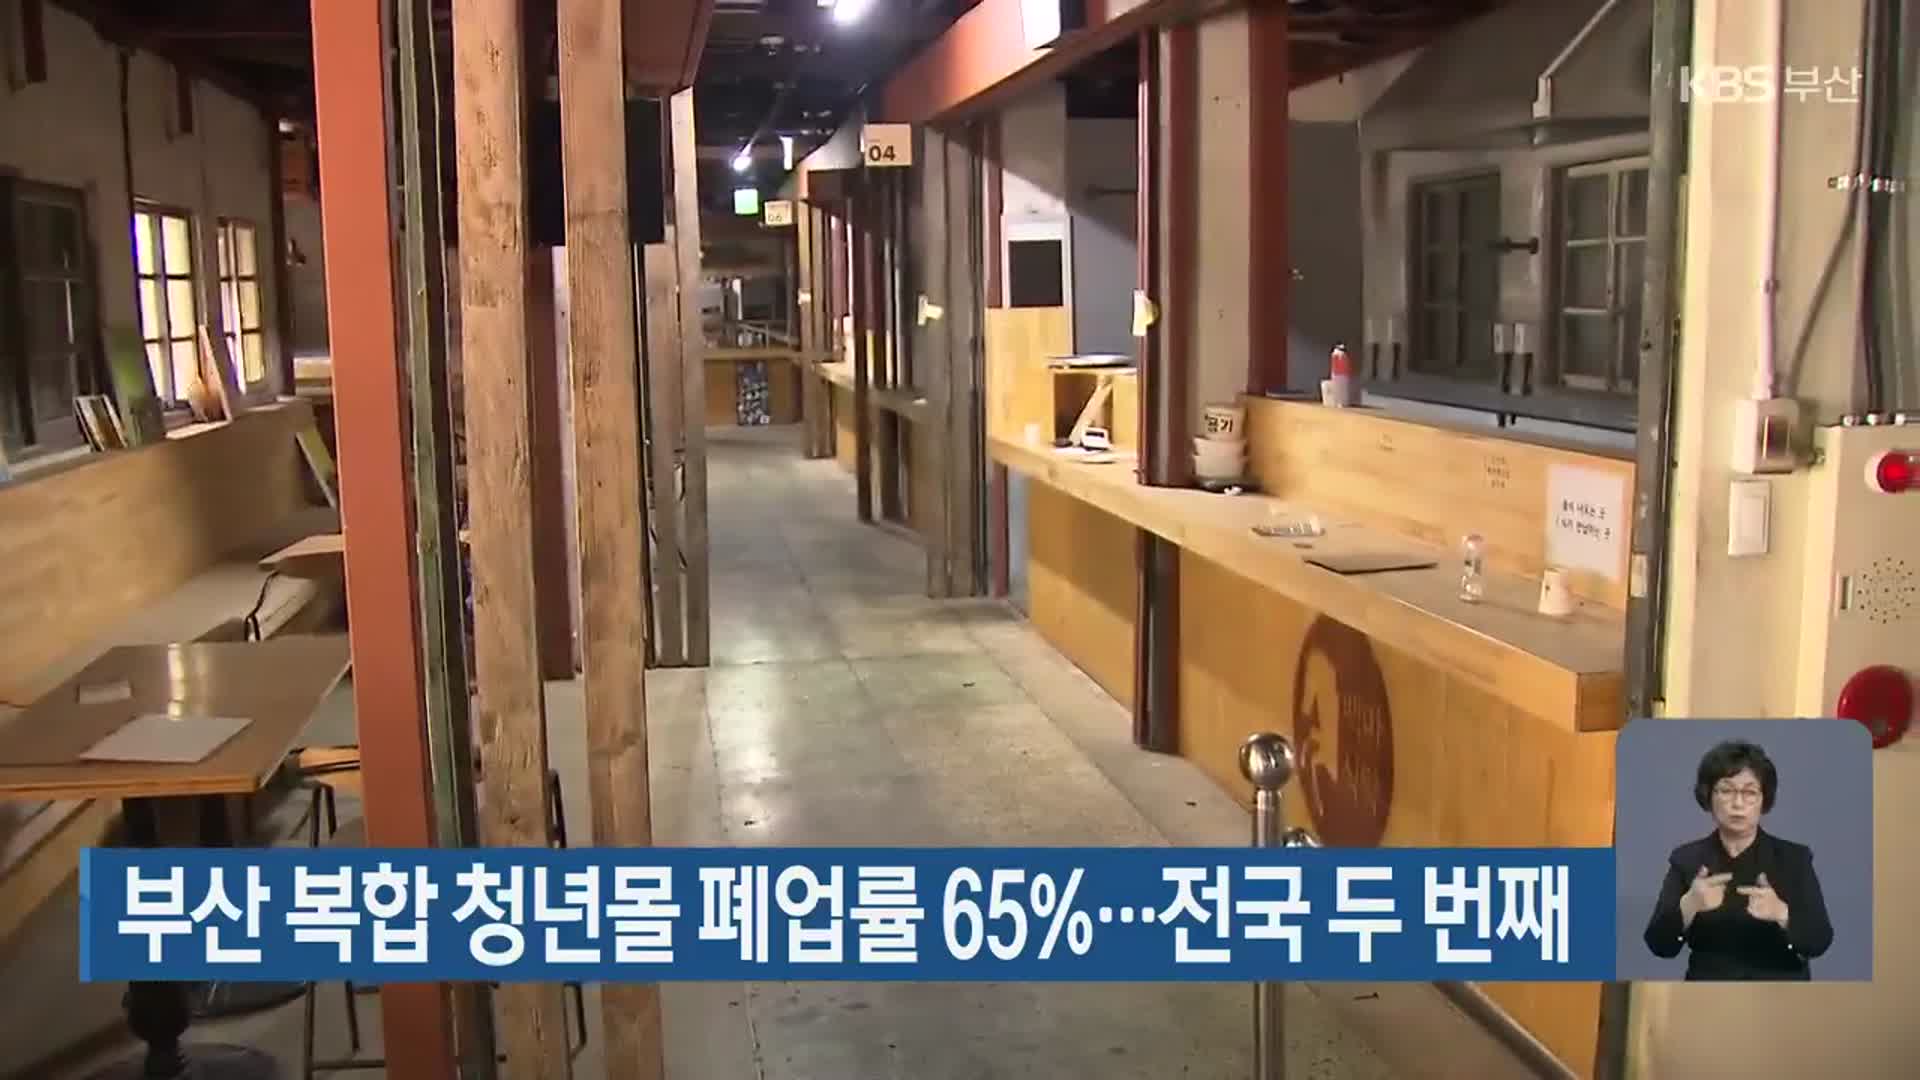 부산 복합 청년몰 폐업률 65%…전국 두 번째